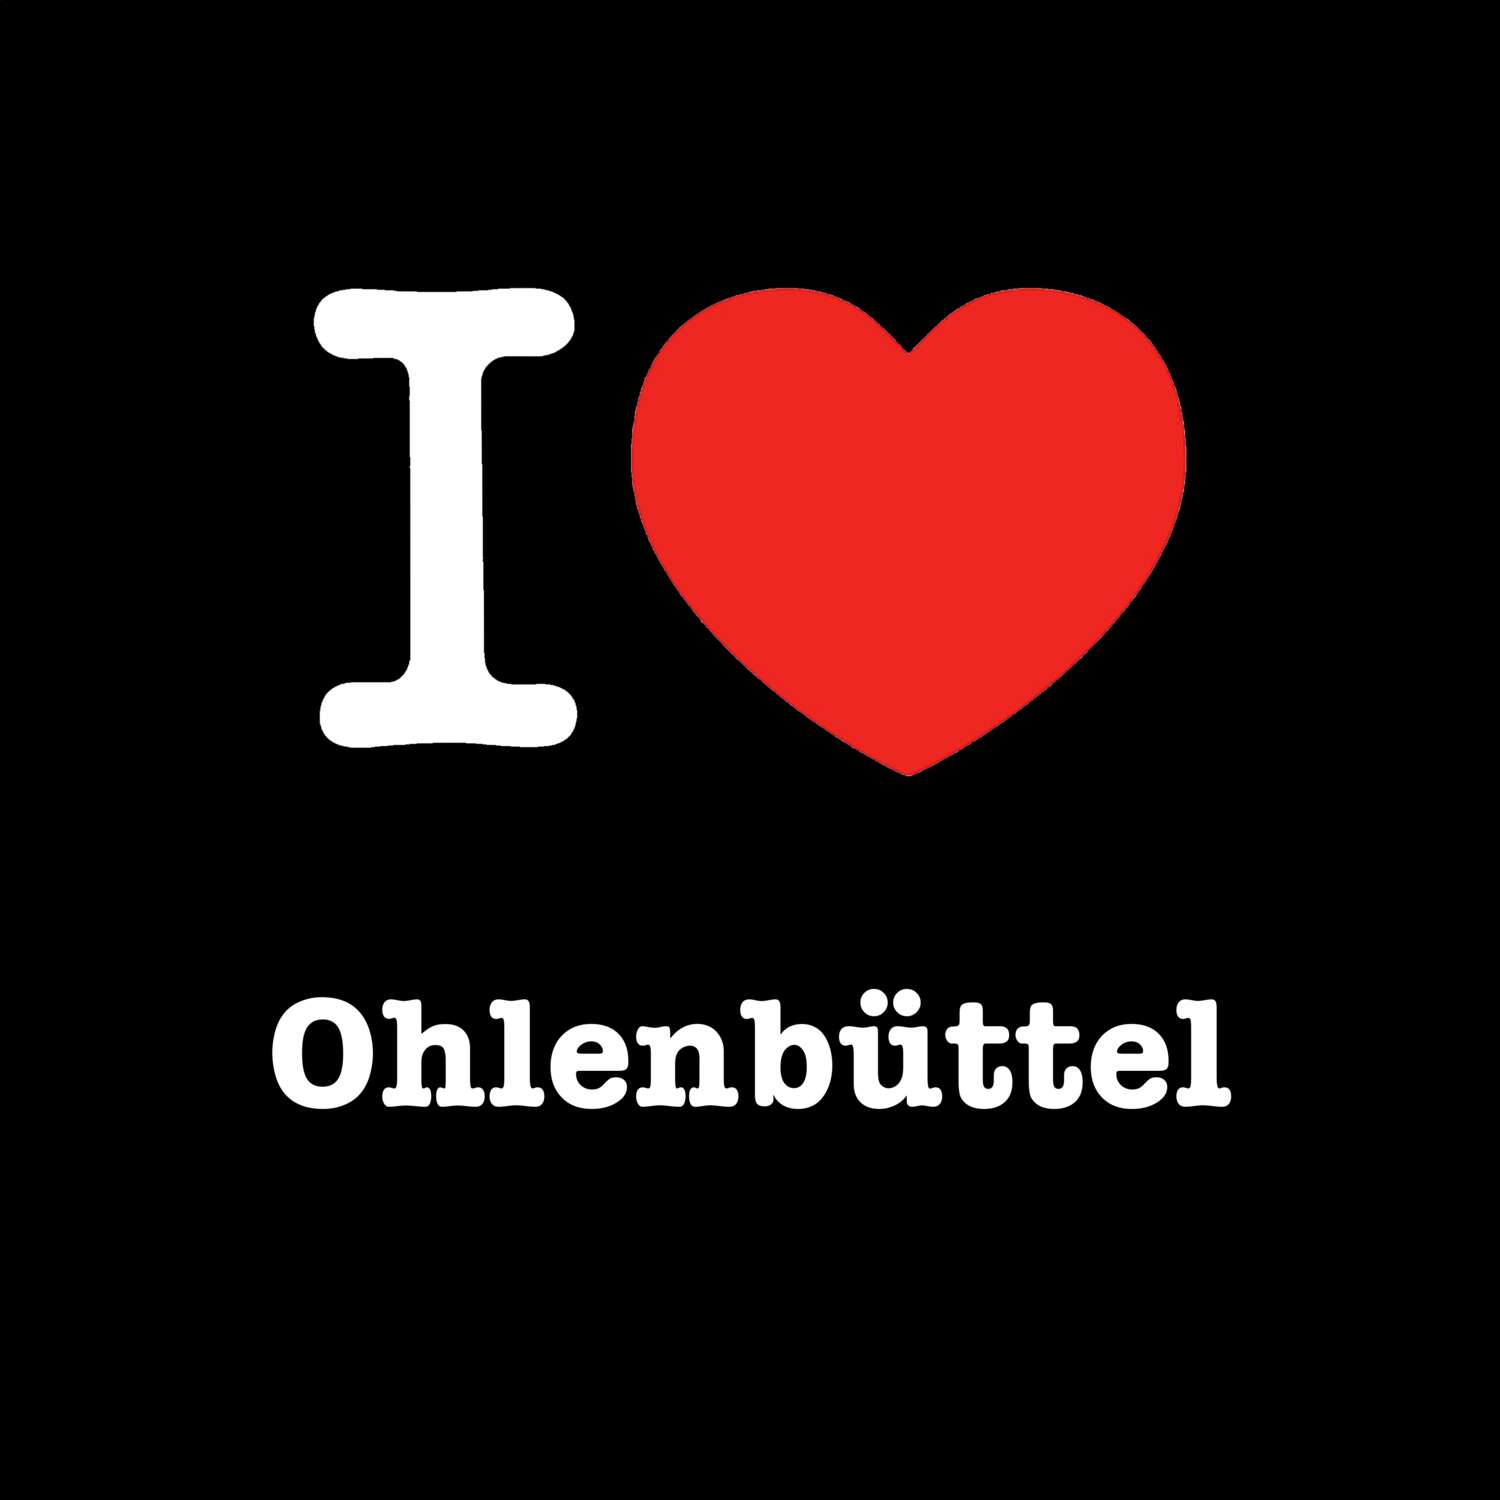 Ohlenbüttel T-Shirt »I love«